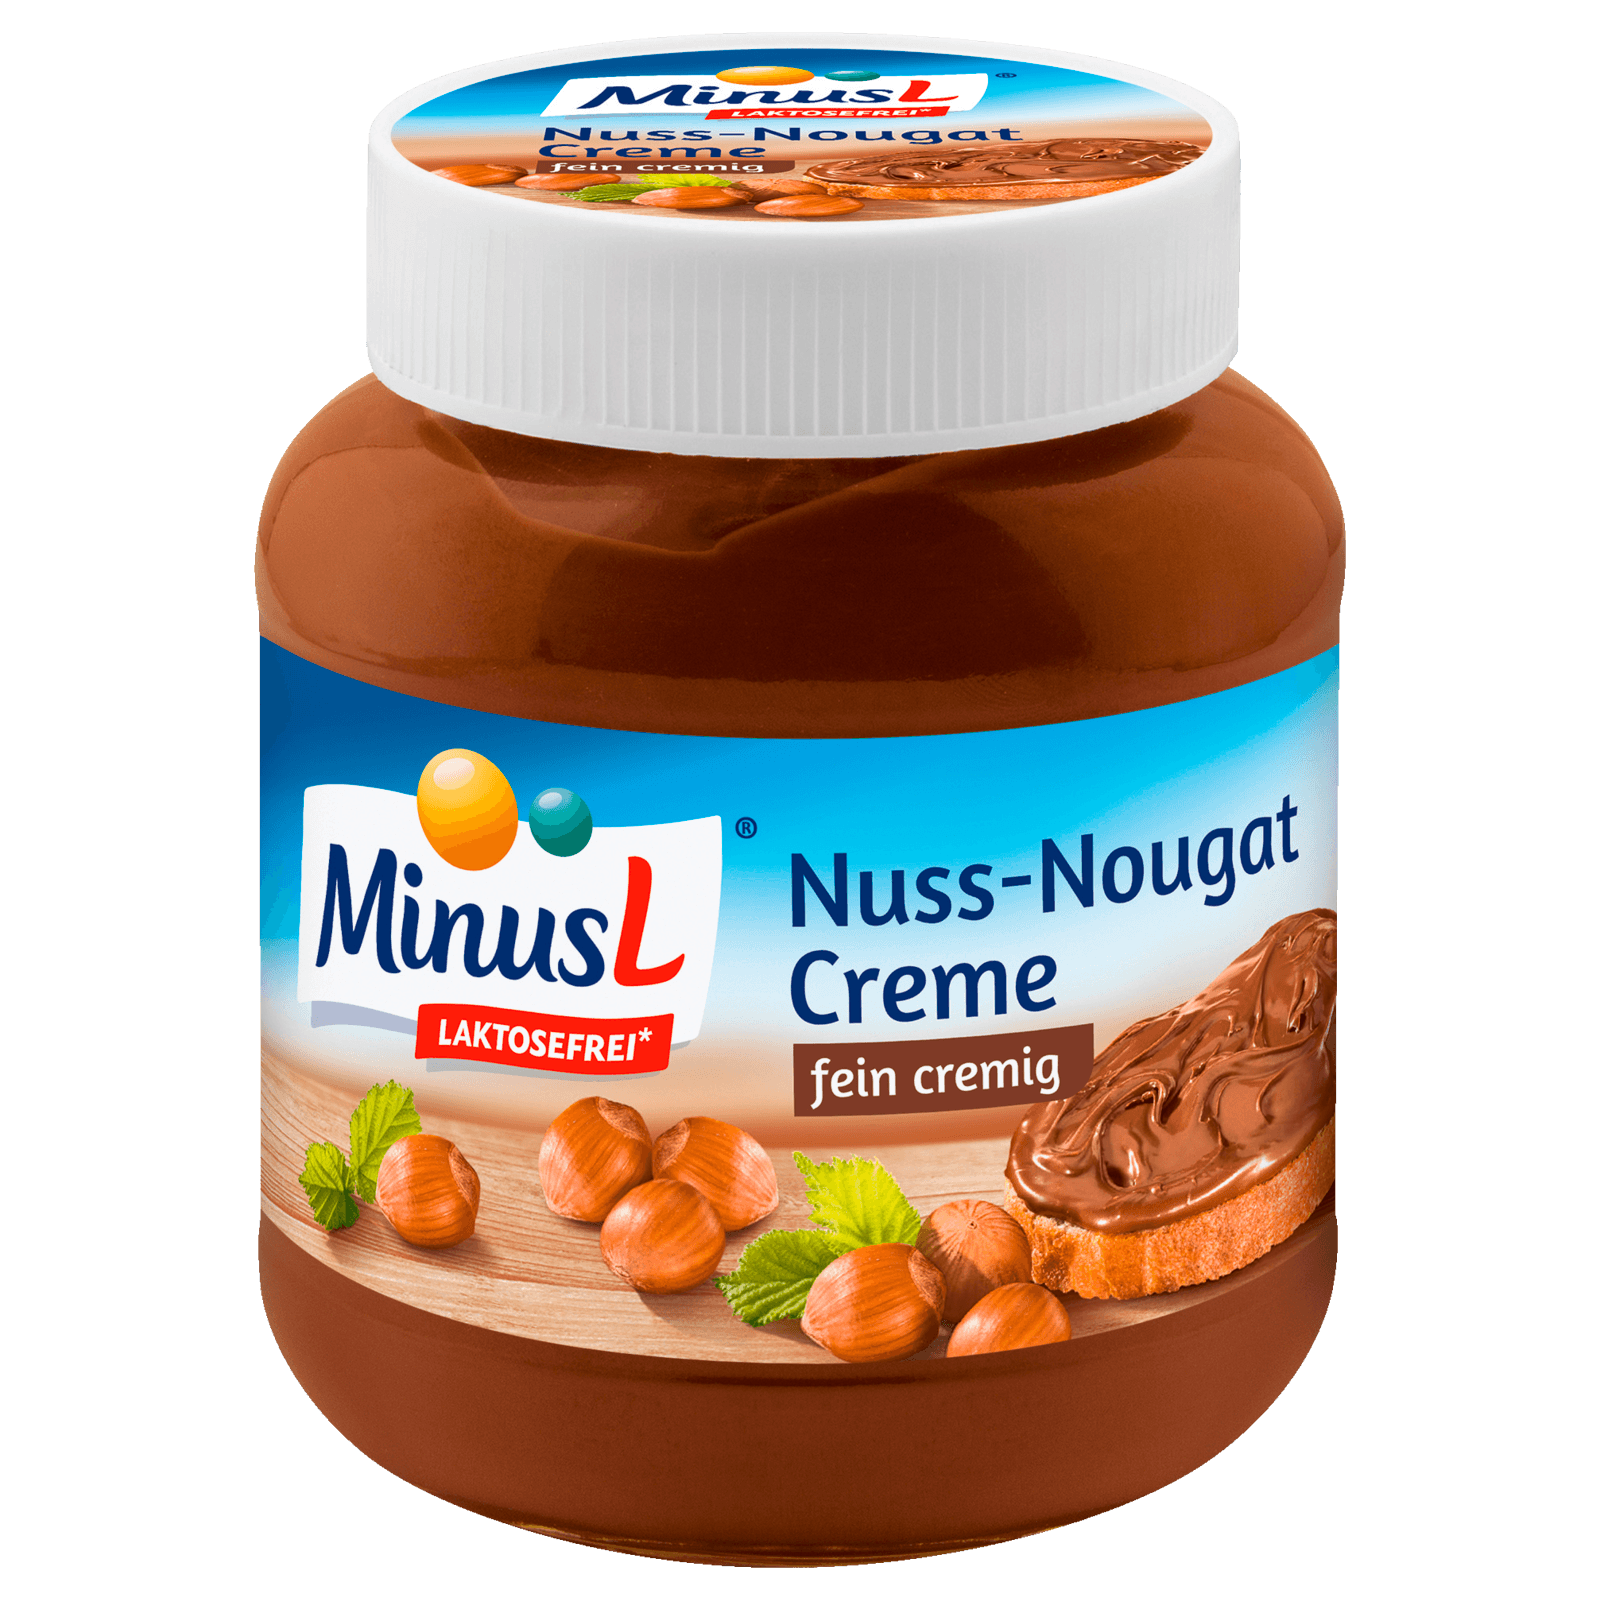 MinusL Nuss-Nougat-Creme 400g bei REWE online bestellen!